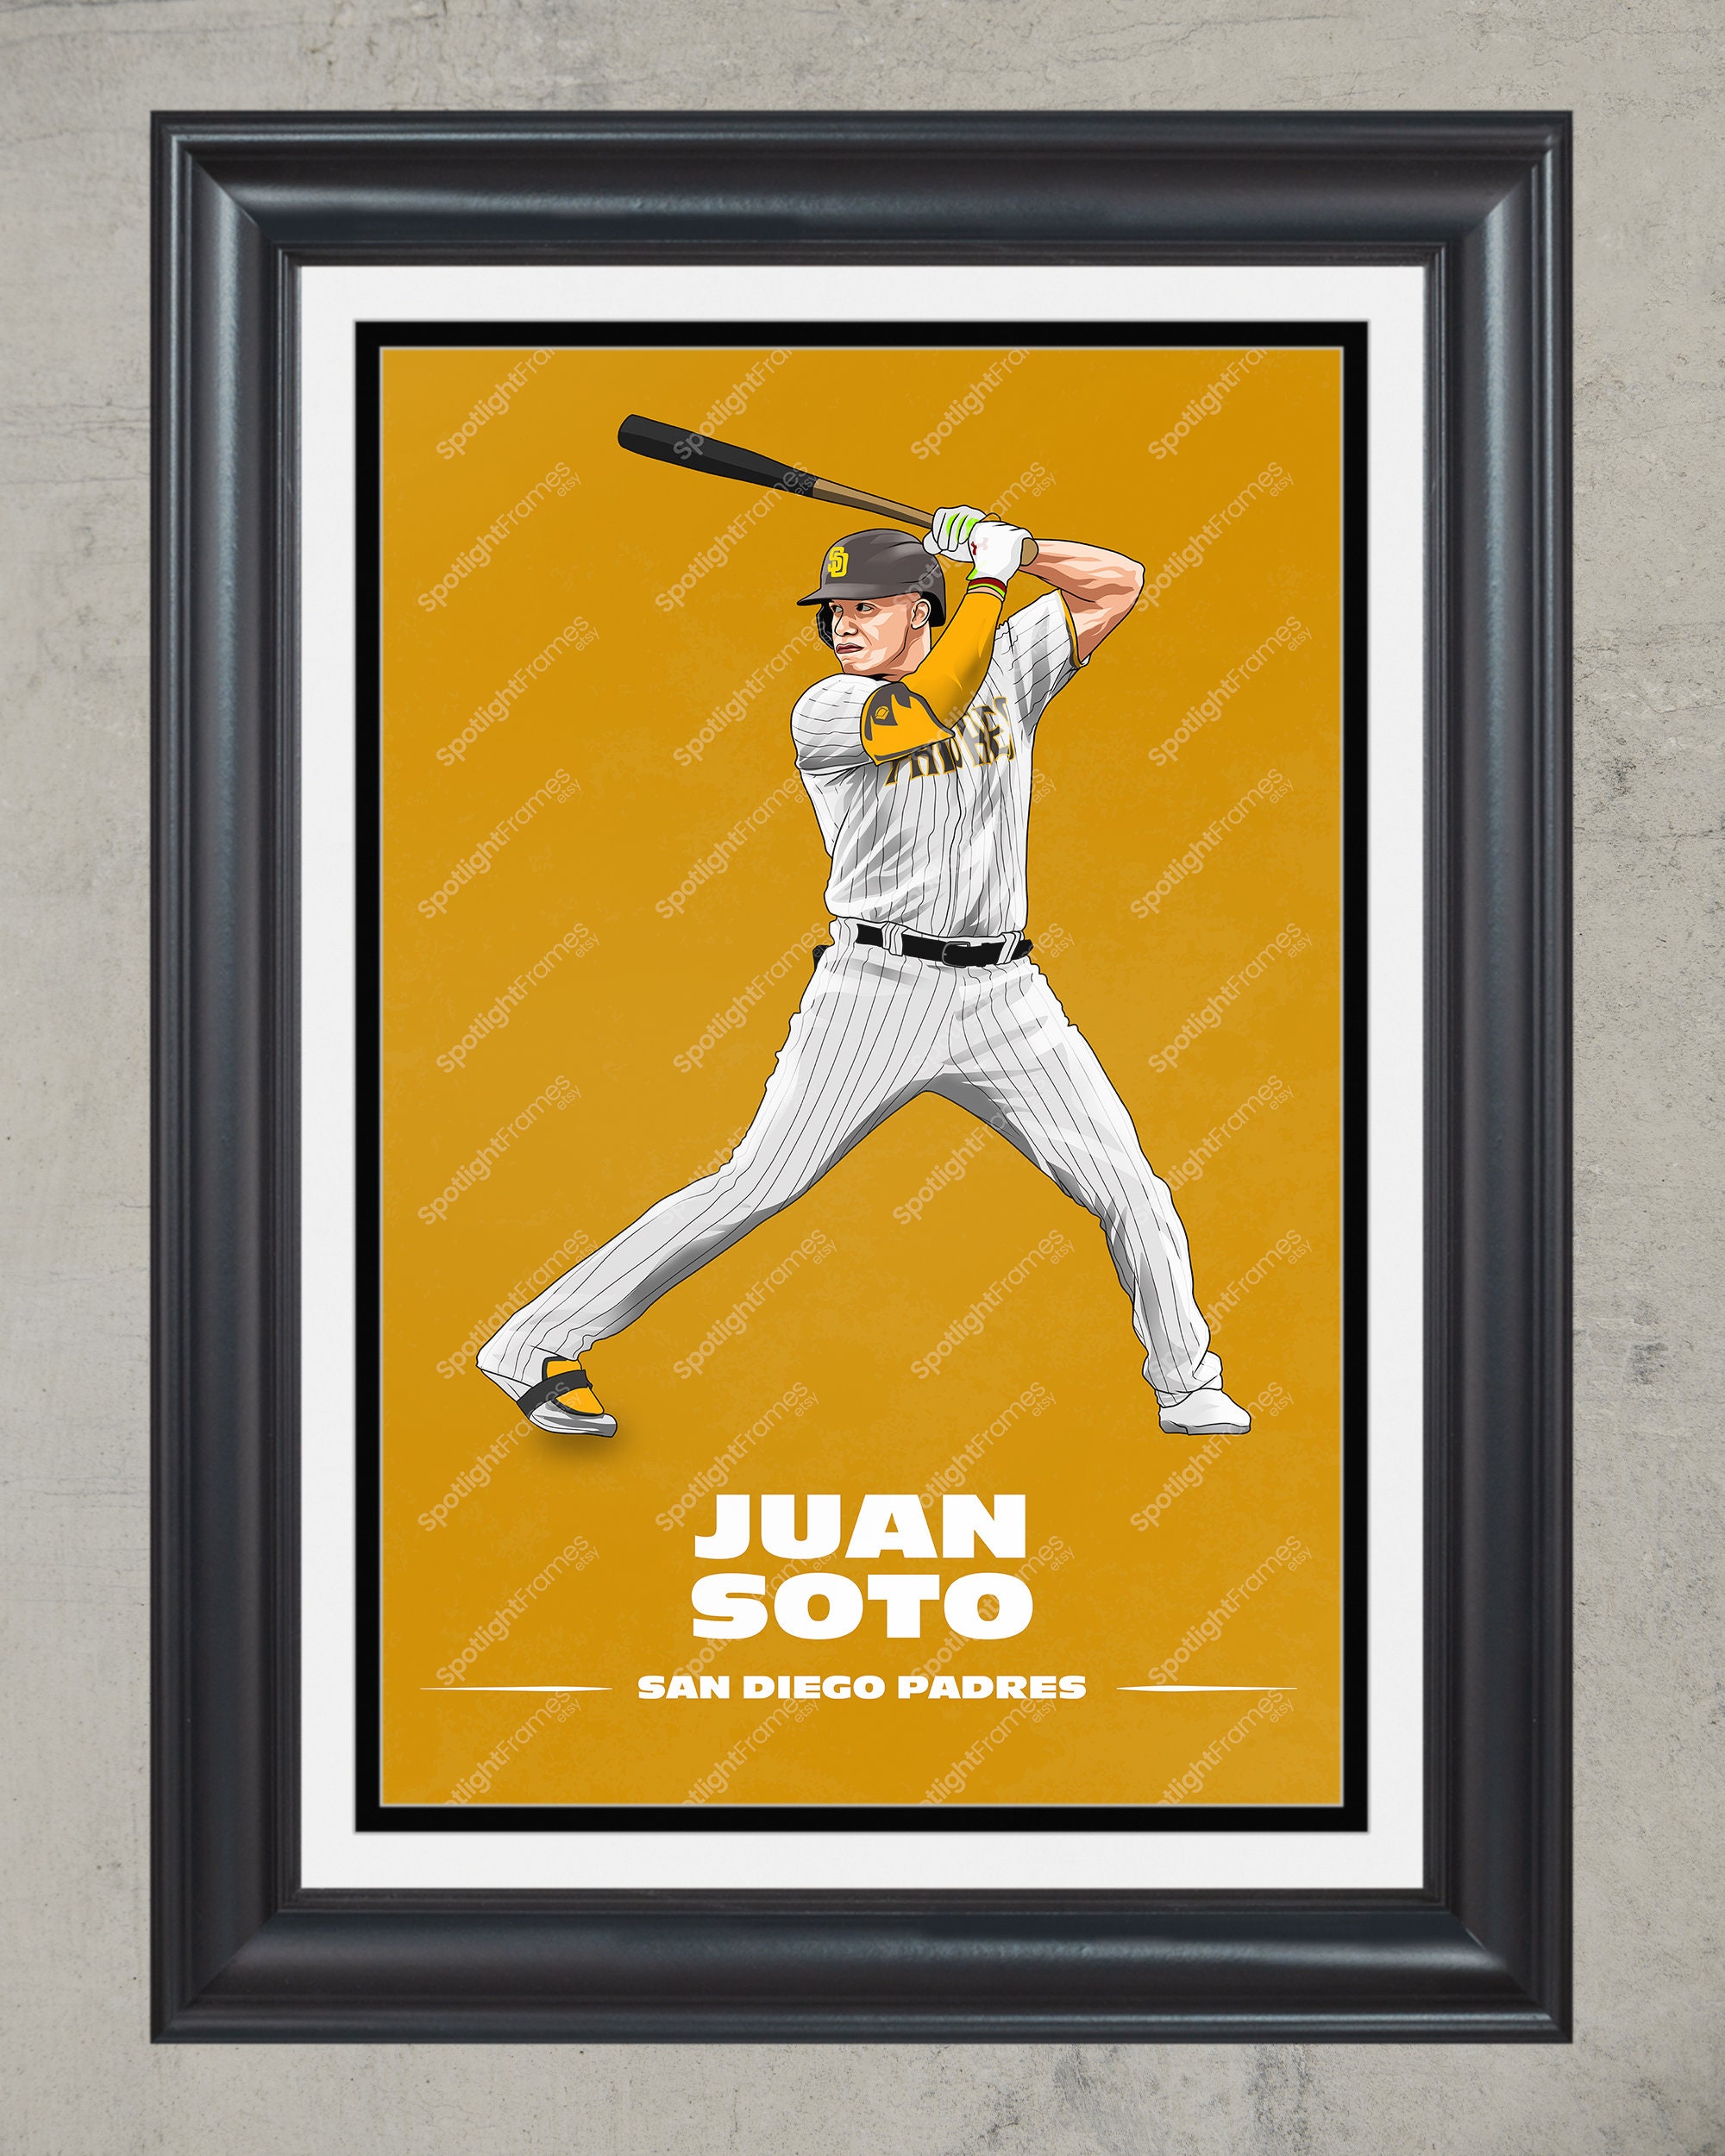 Juan Soto cool edit in Washington  Baseball wallpaper, Mlb wallpaper, Mlb  baseball teams